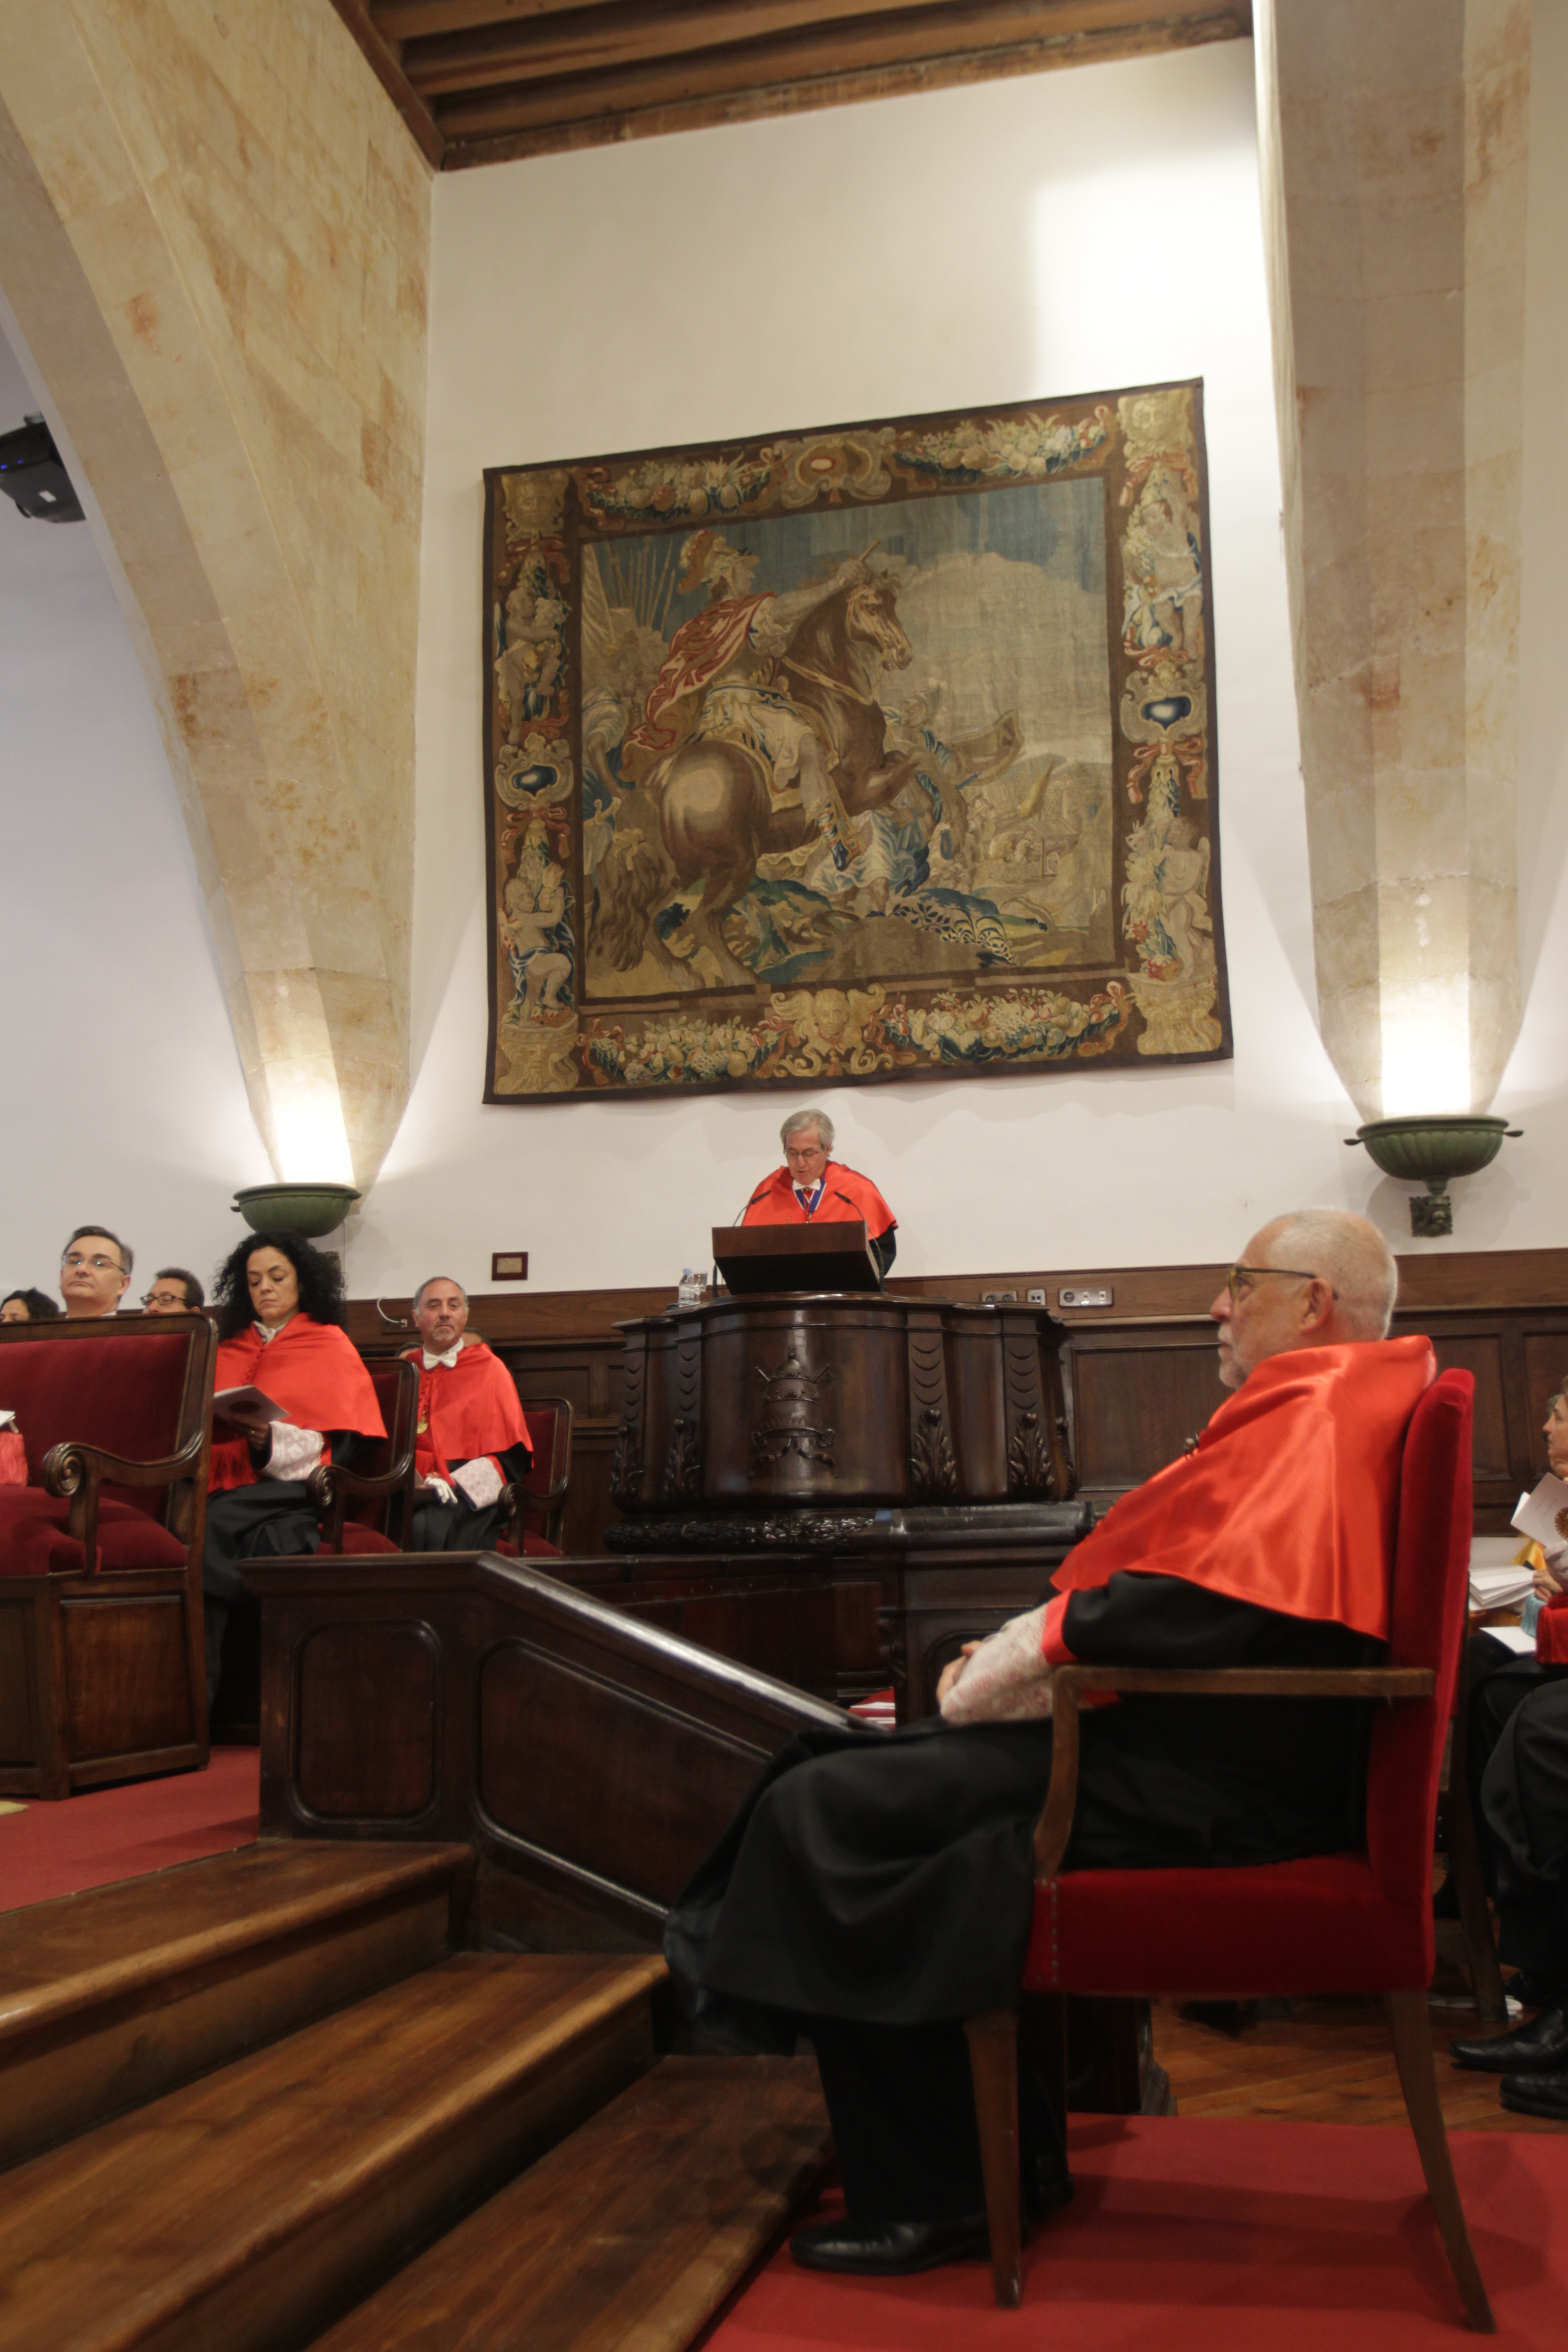 La Universidad de Salamanca nombra doctor honoris causa al catedrático de Derecho Penal Francisco Muñoz Conde